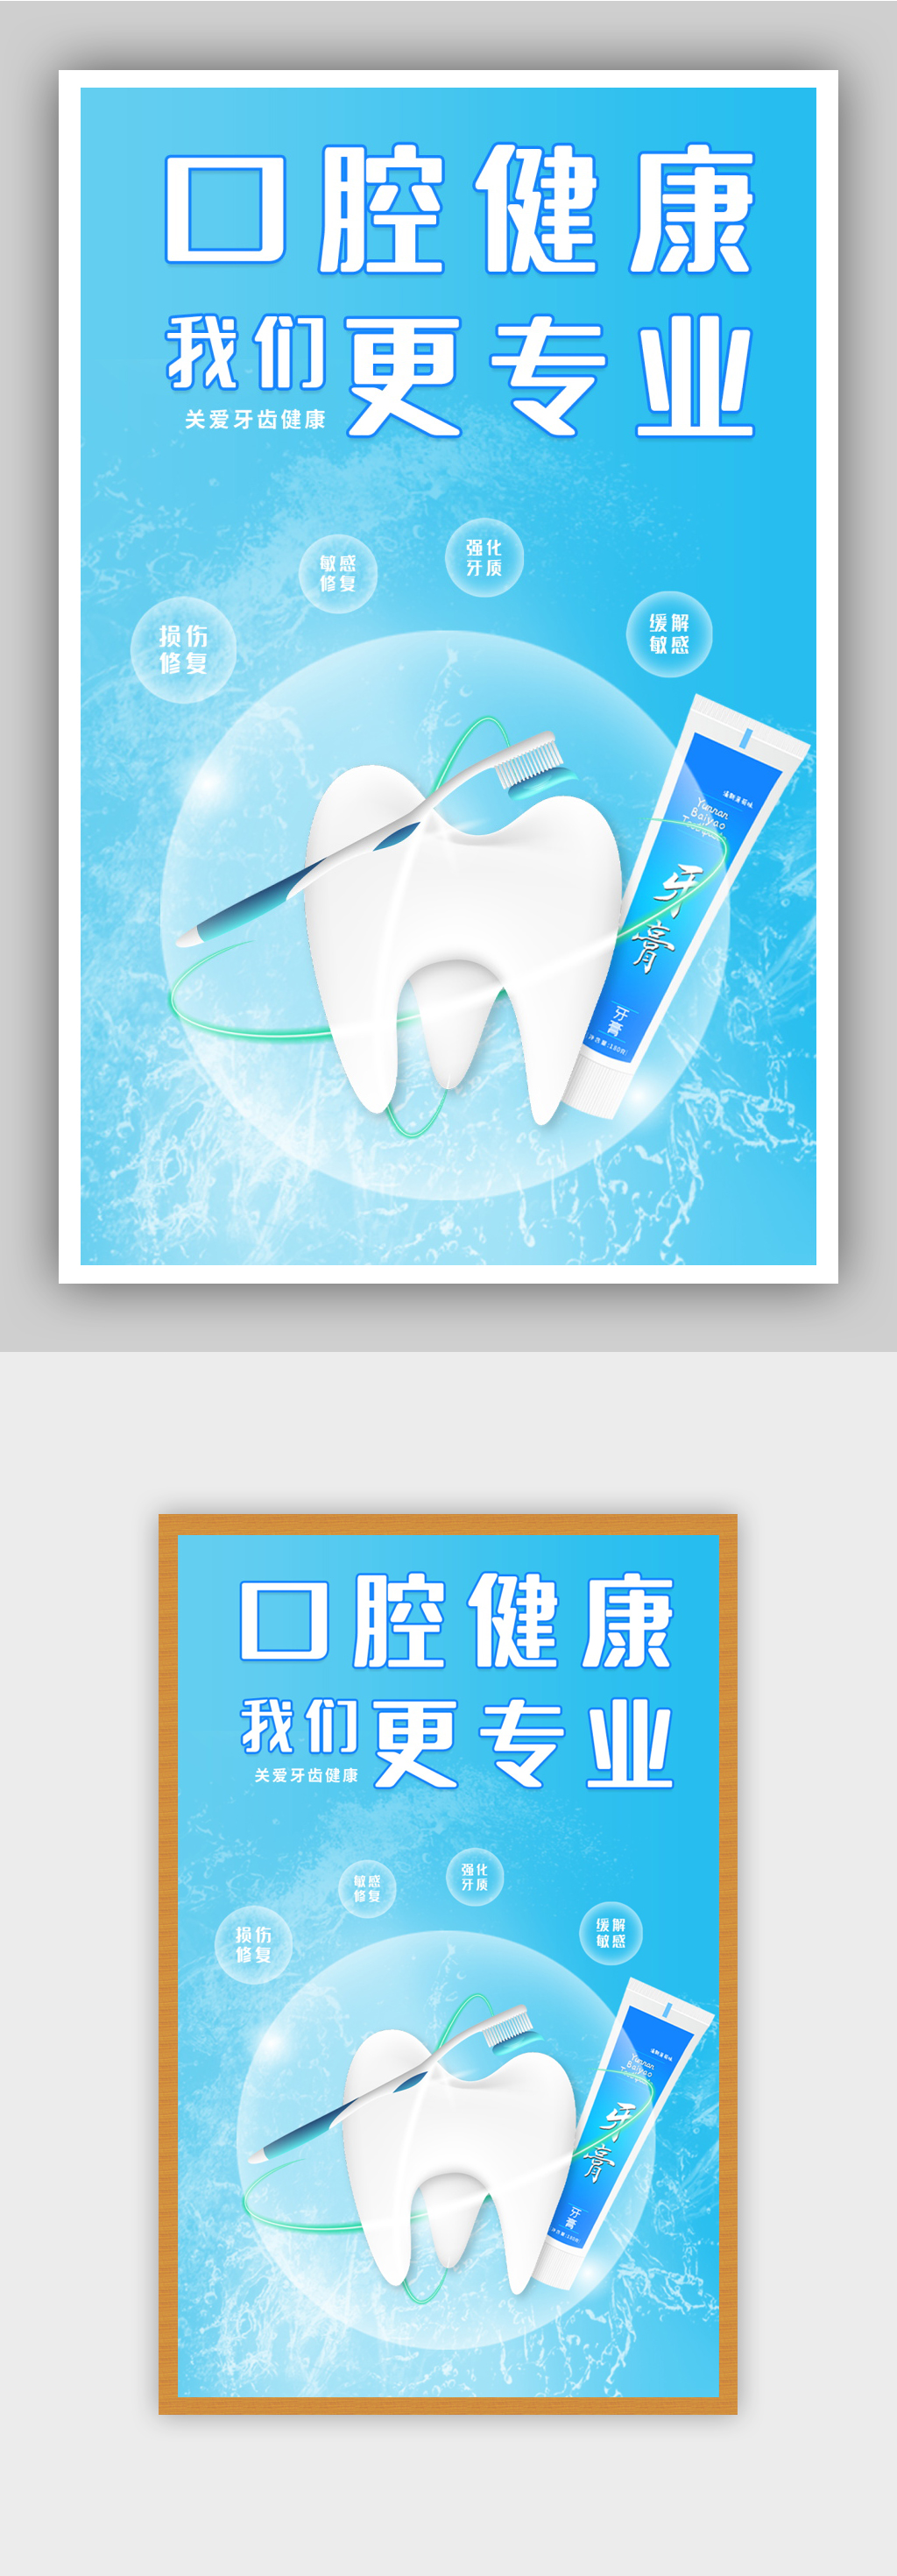 牙膏平面设计广告图片